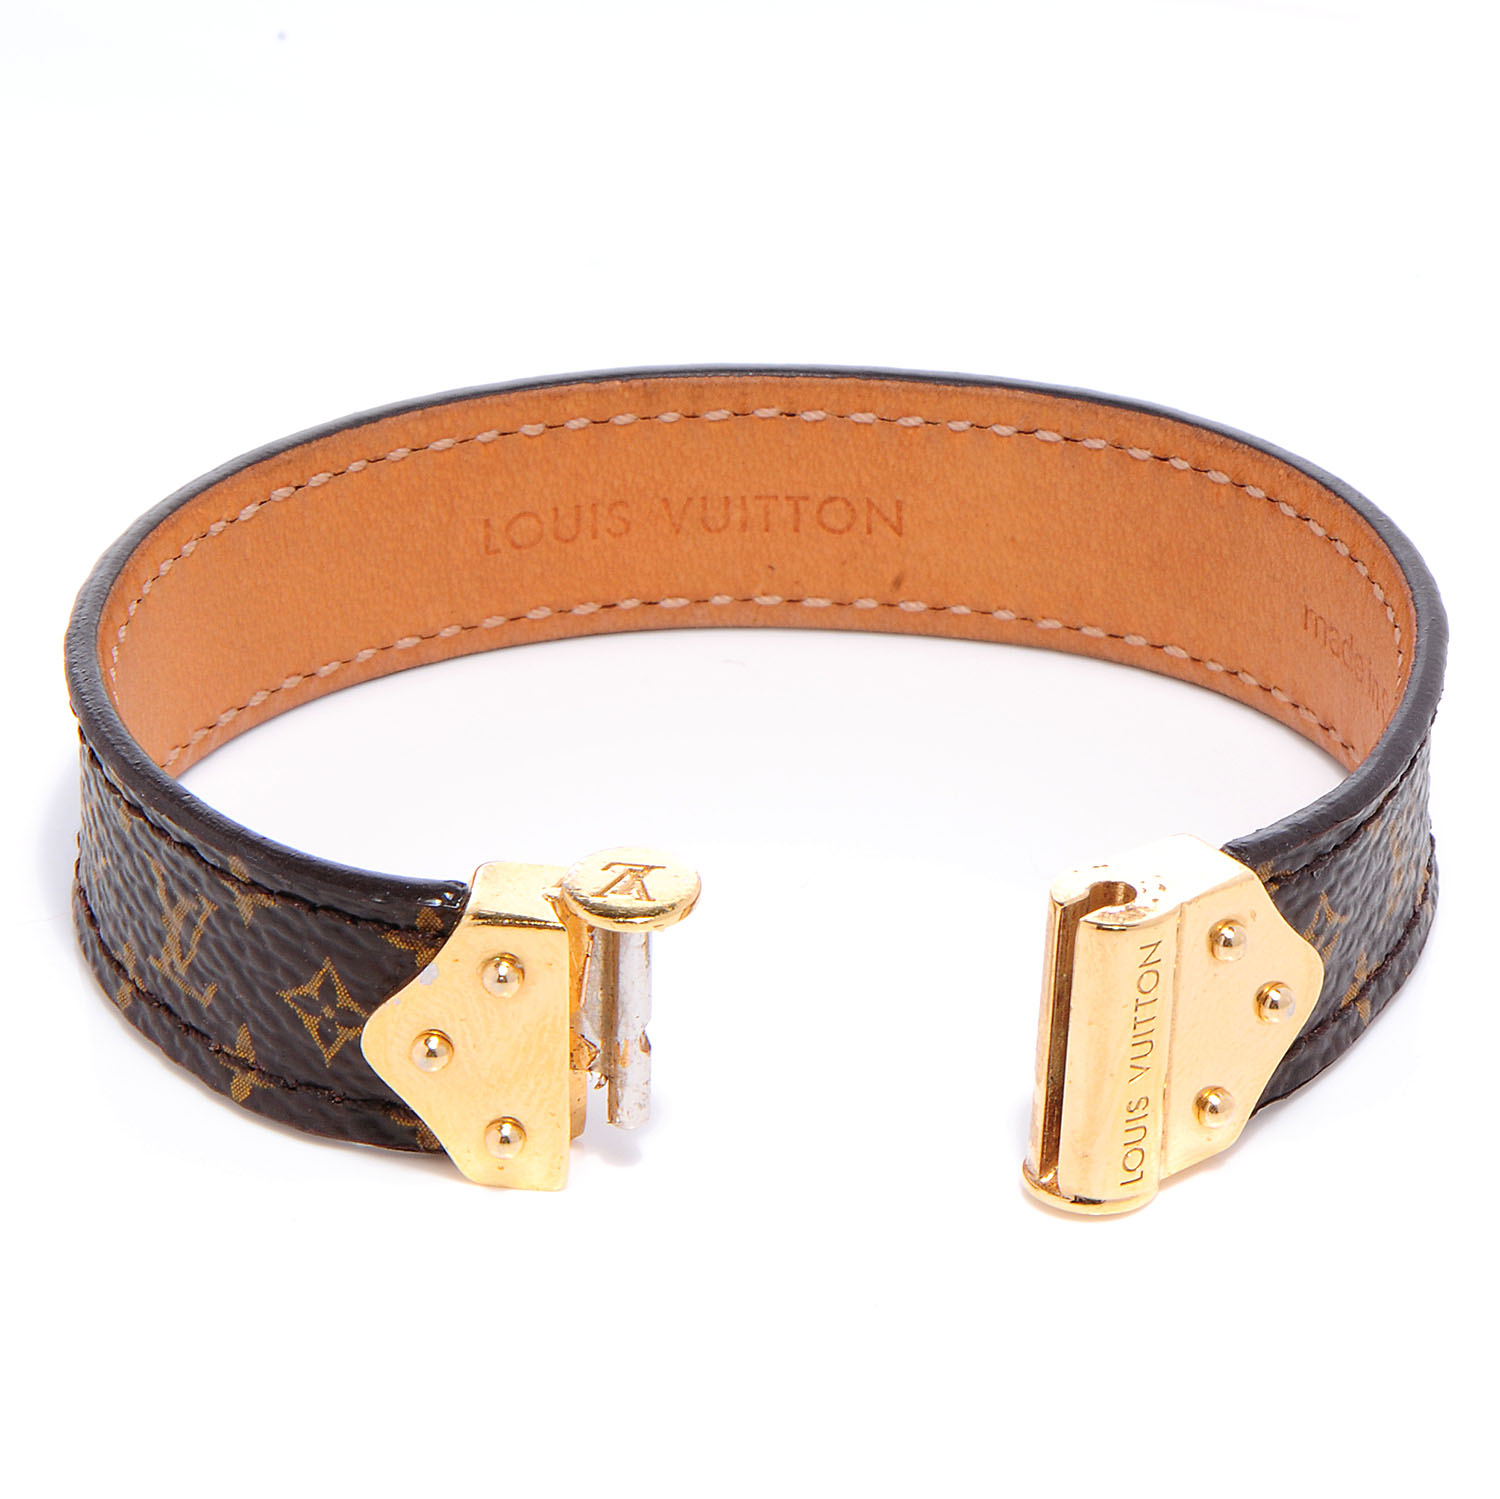 LOUIS VUITTON Monogram Nano Bracelet Size 17 65019